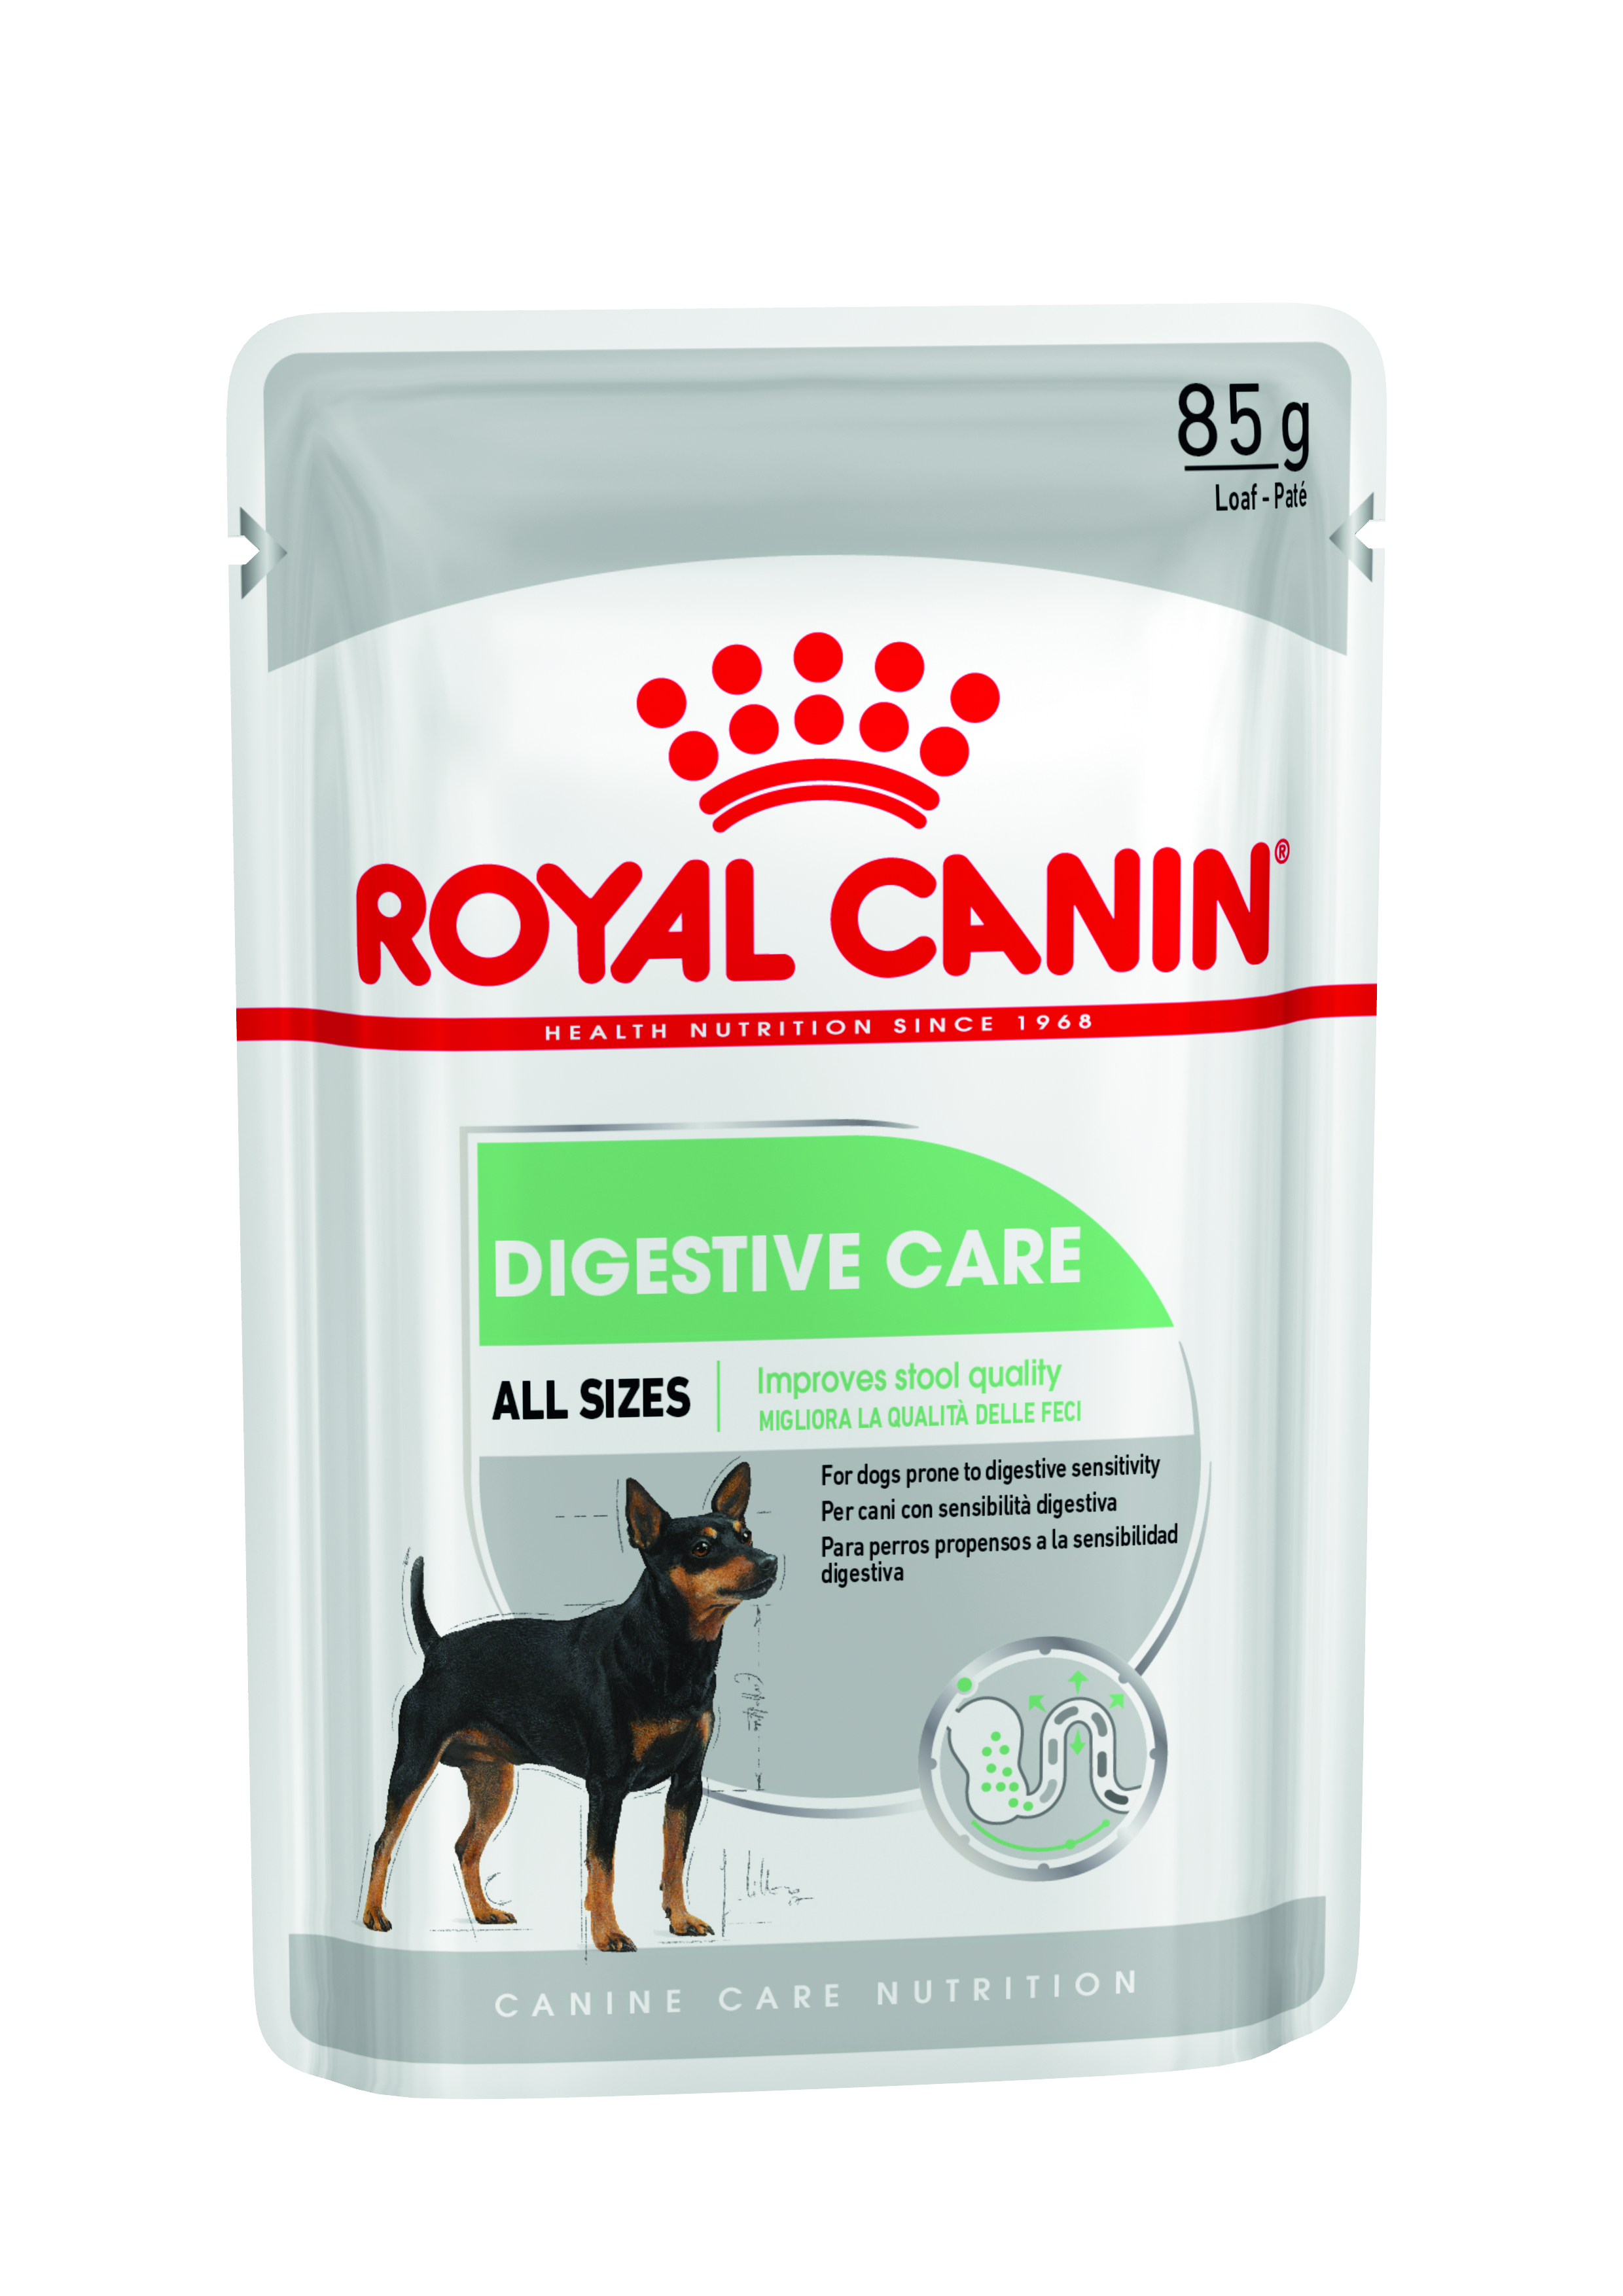 royal canin digestive care untuk apa